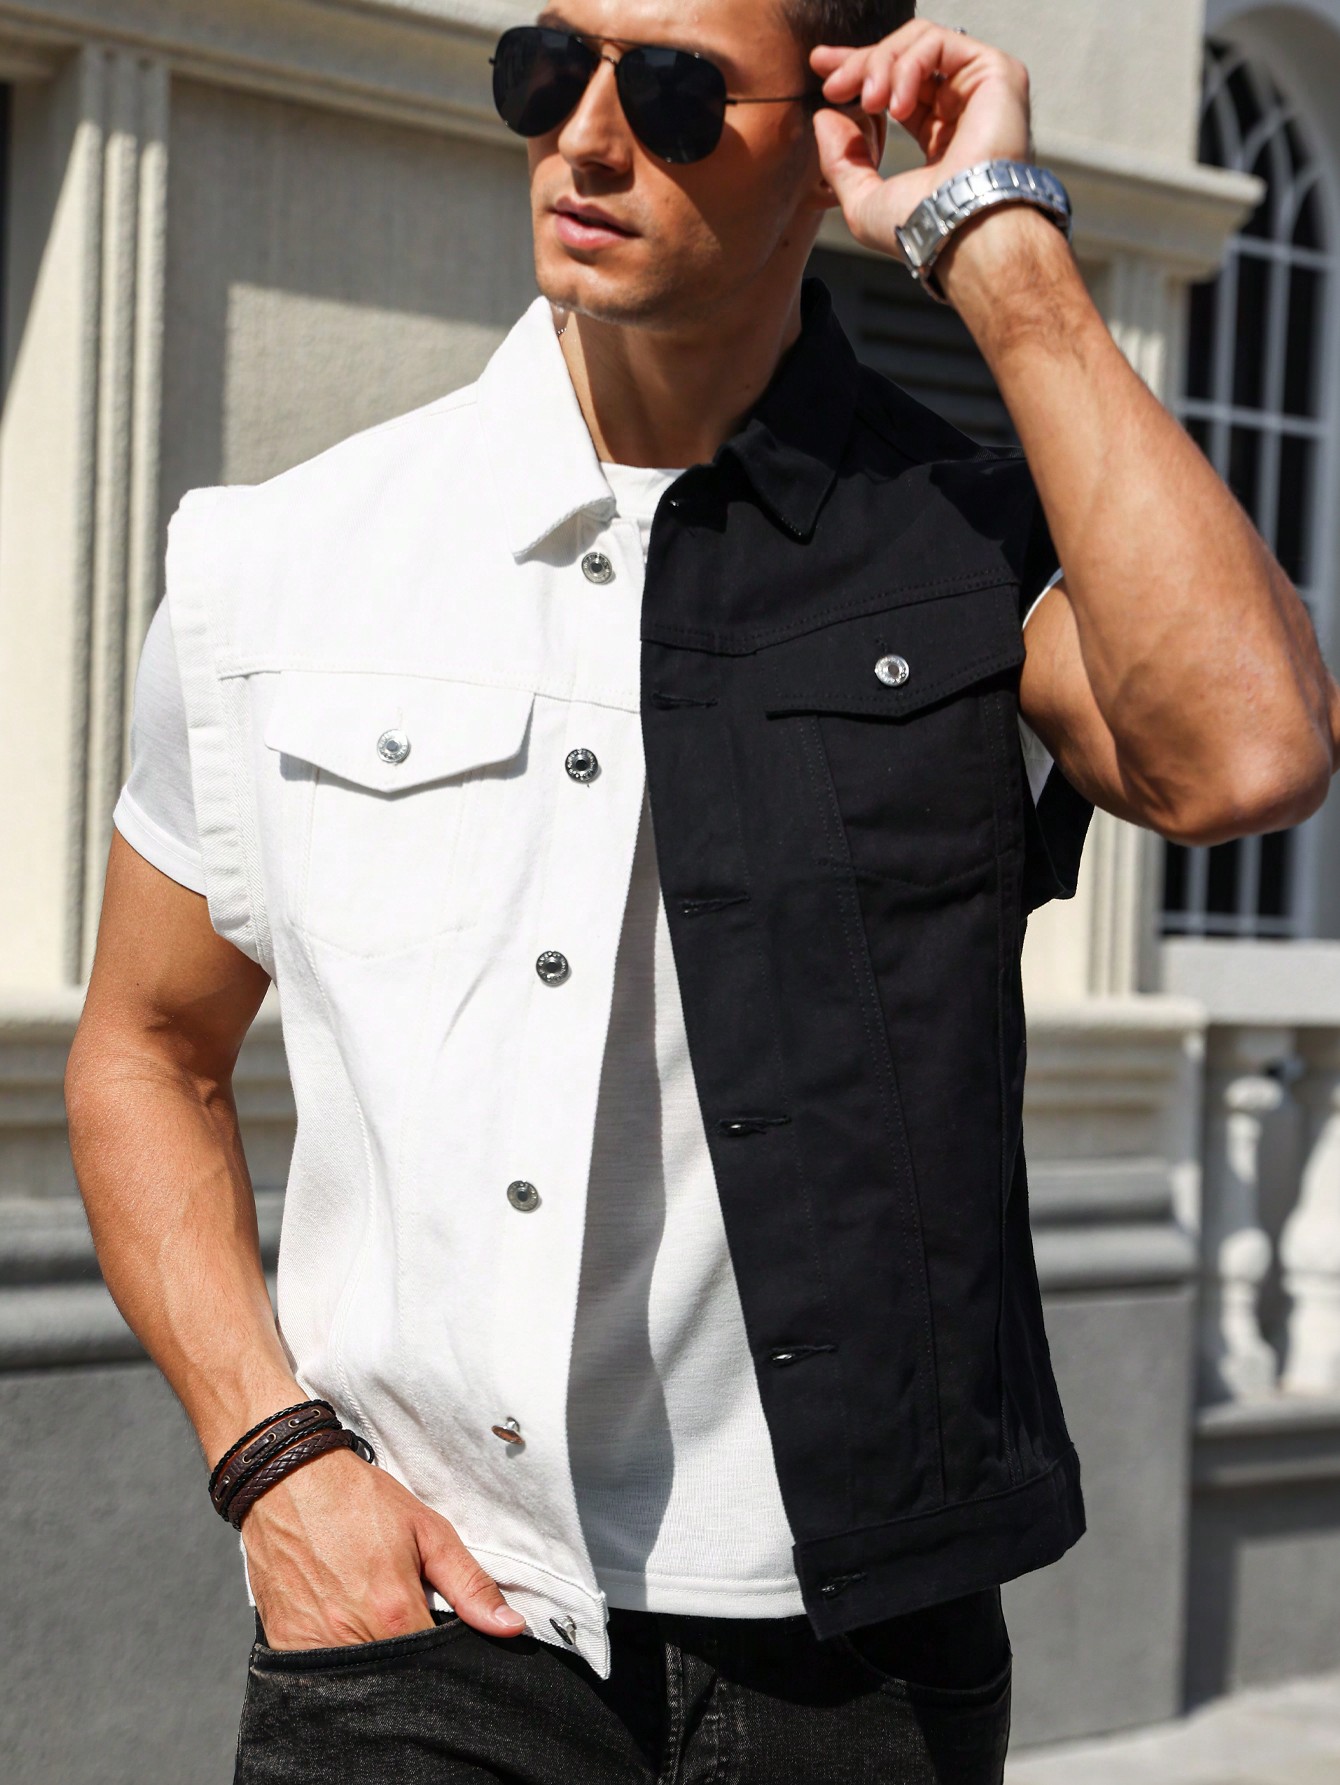 Мужская джинсовая рубашка без рукавов Manfinity EMRG с воротником, черное и белое